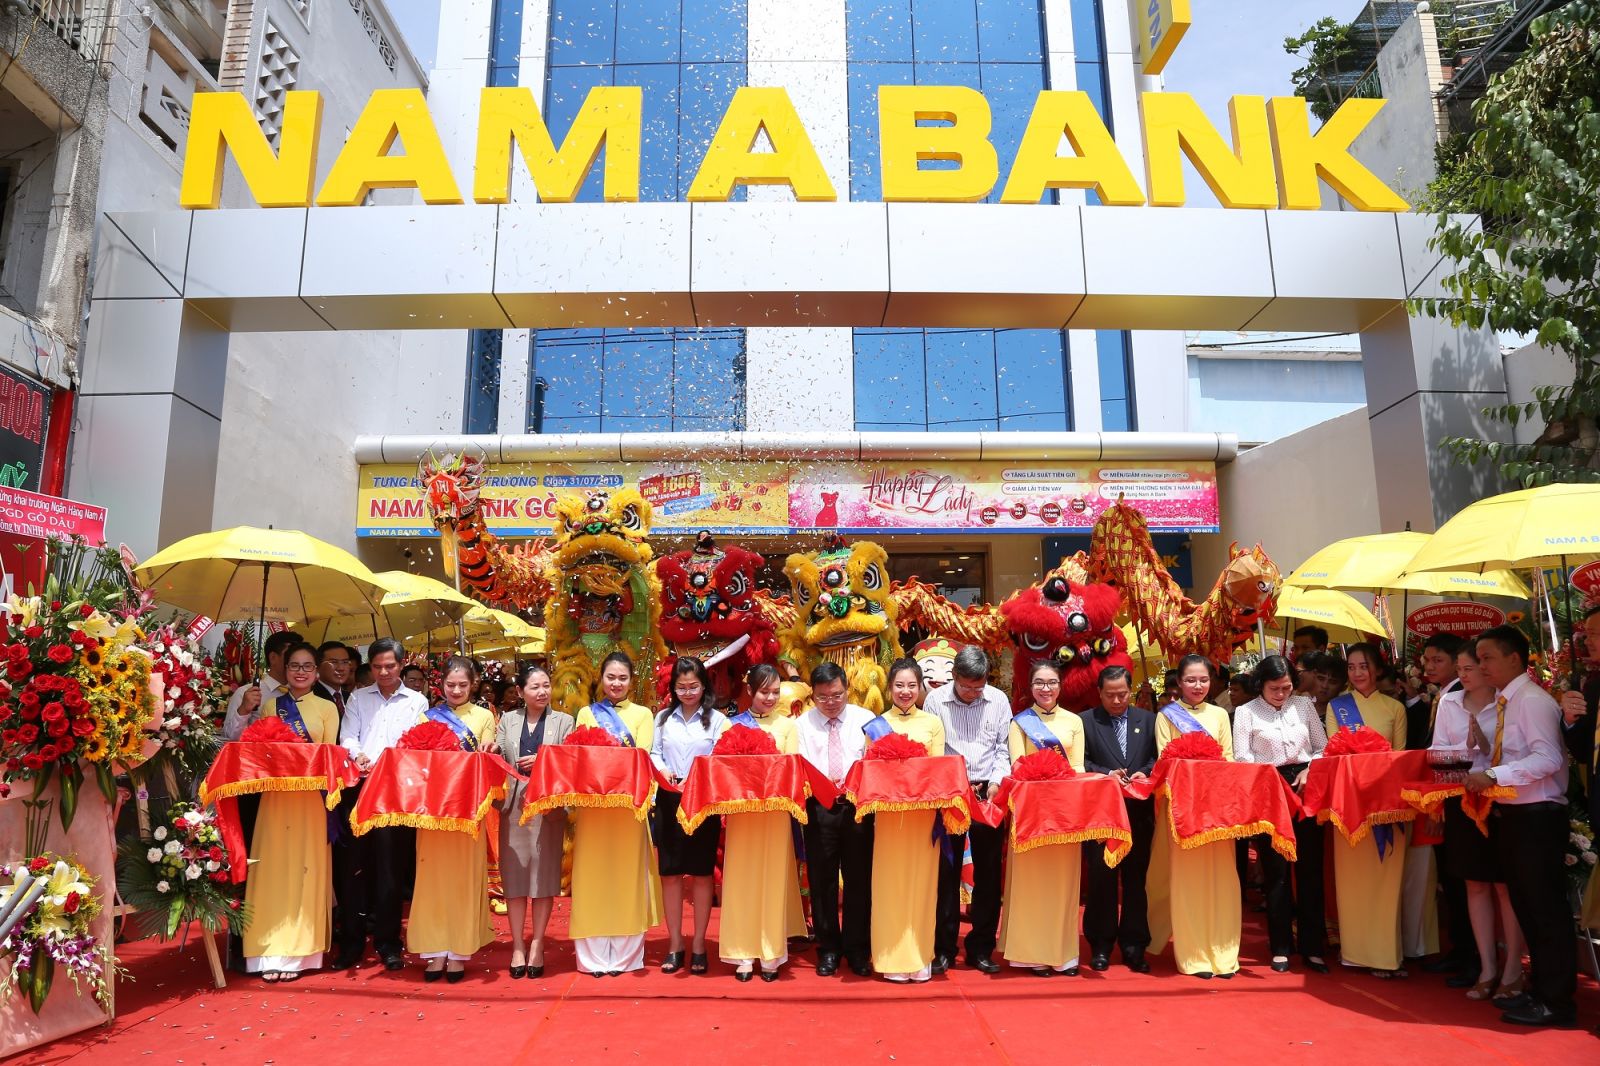 Nam A Bank Tân Biên và Nam A Bank Gò Dầu chính thức đưa vào hoạt động sẽ tiếp tục cung cấp các giải pháp tài chính tối ưu cho khách hàng địa phương và khu vực lân cận.